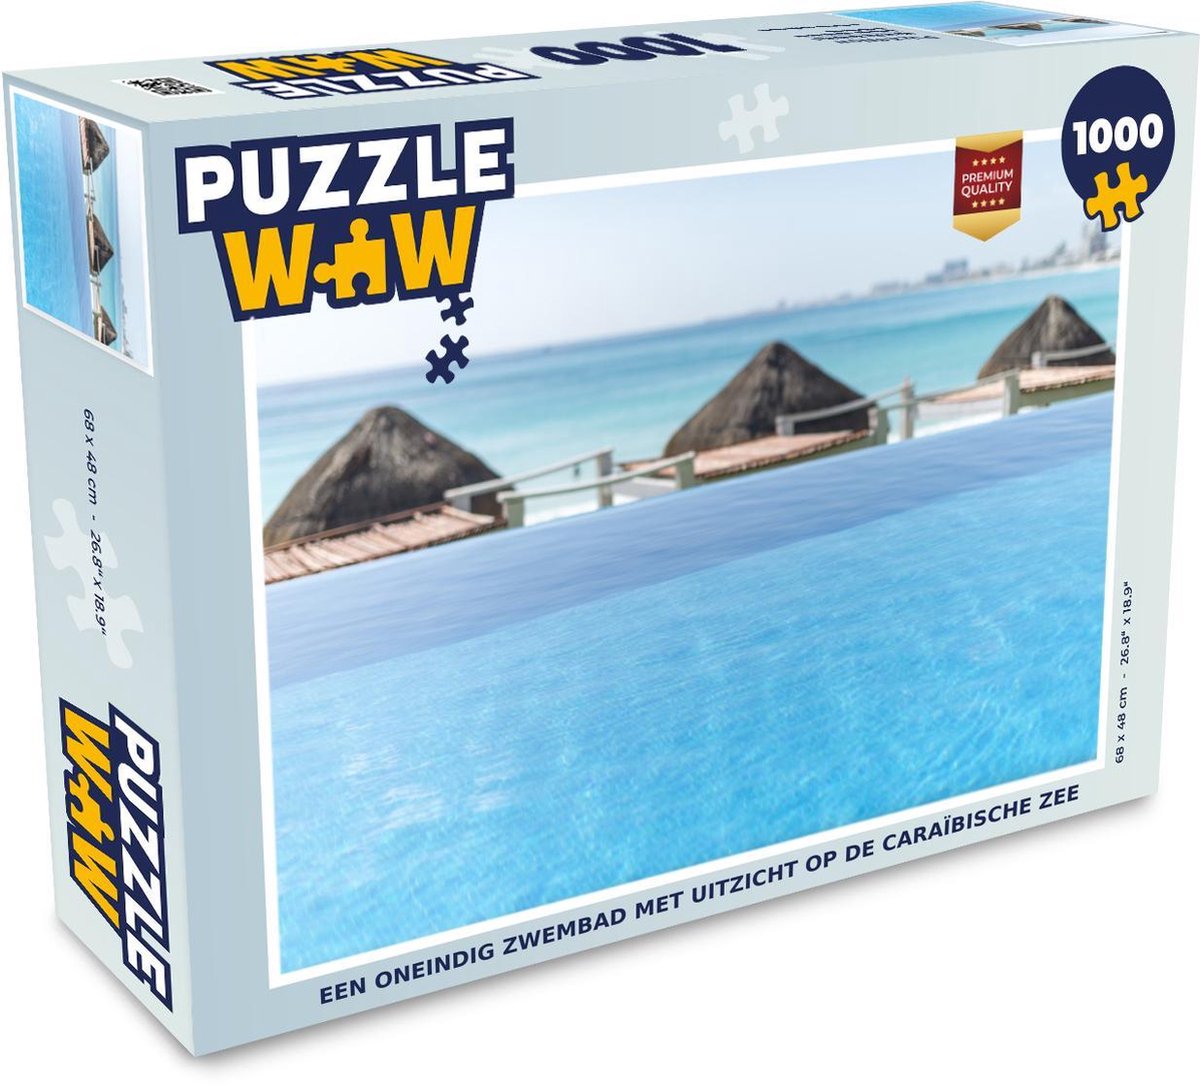 Afbeelding van product Puzzel 1000 stukjes volwassenen Zwembad zonder einde 1000 stukjes - Een oneindig zwembad met uitzicht op de Caraïbische Zee puzzel 1000 stukjes - PuzzleWow heeft +100000 puzzels